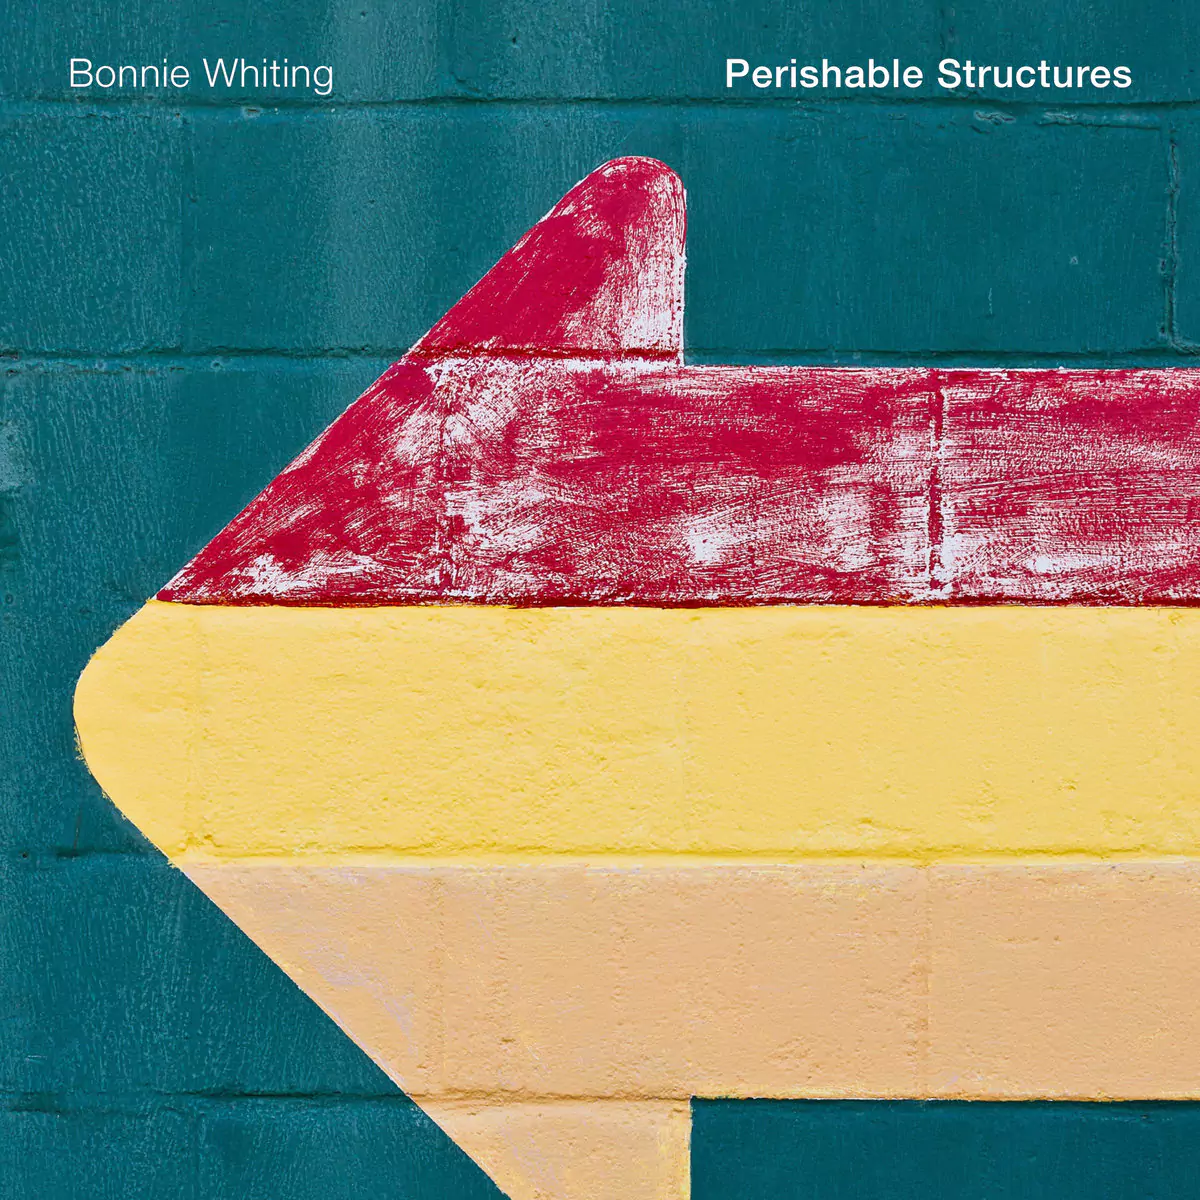 album art for Bonnie Whiting's album 'Perishable Structures'